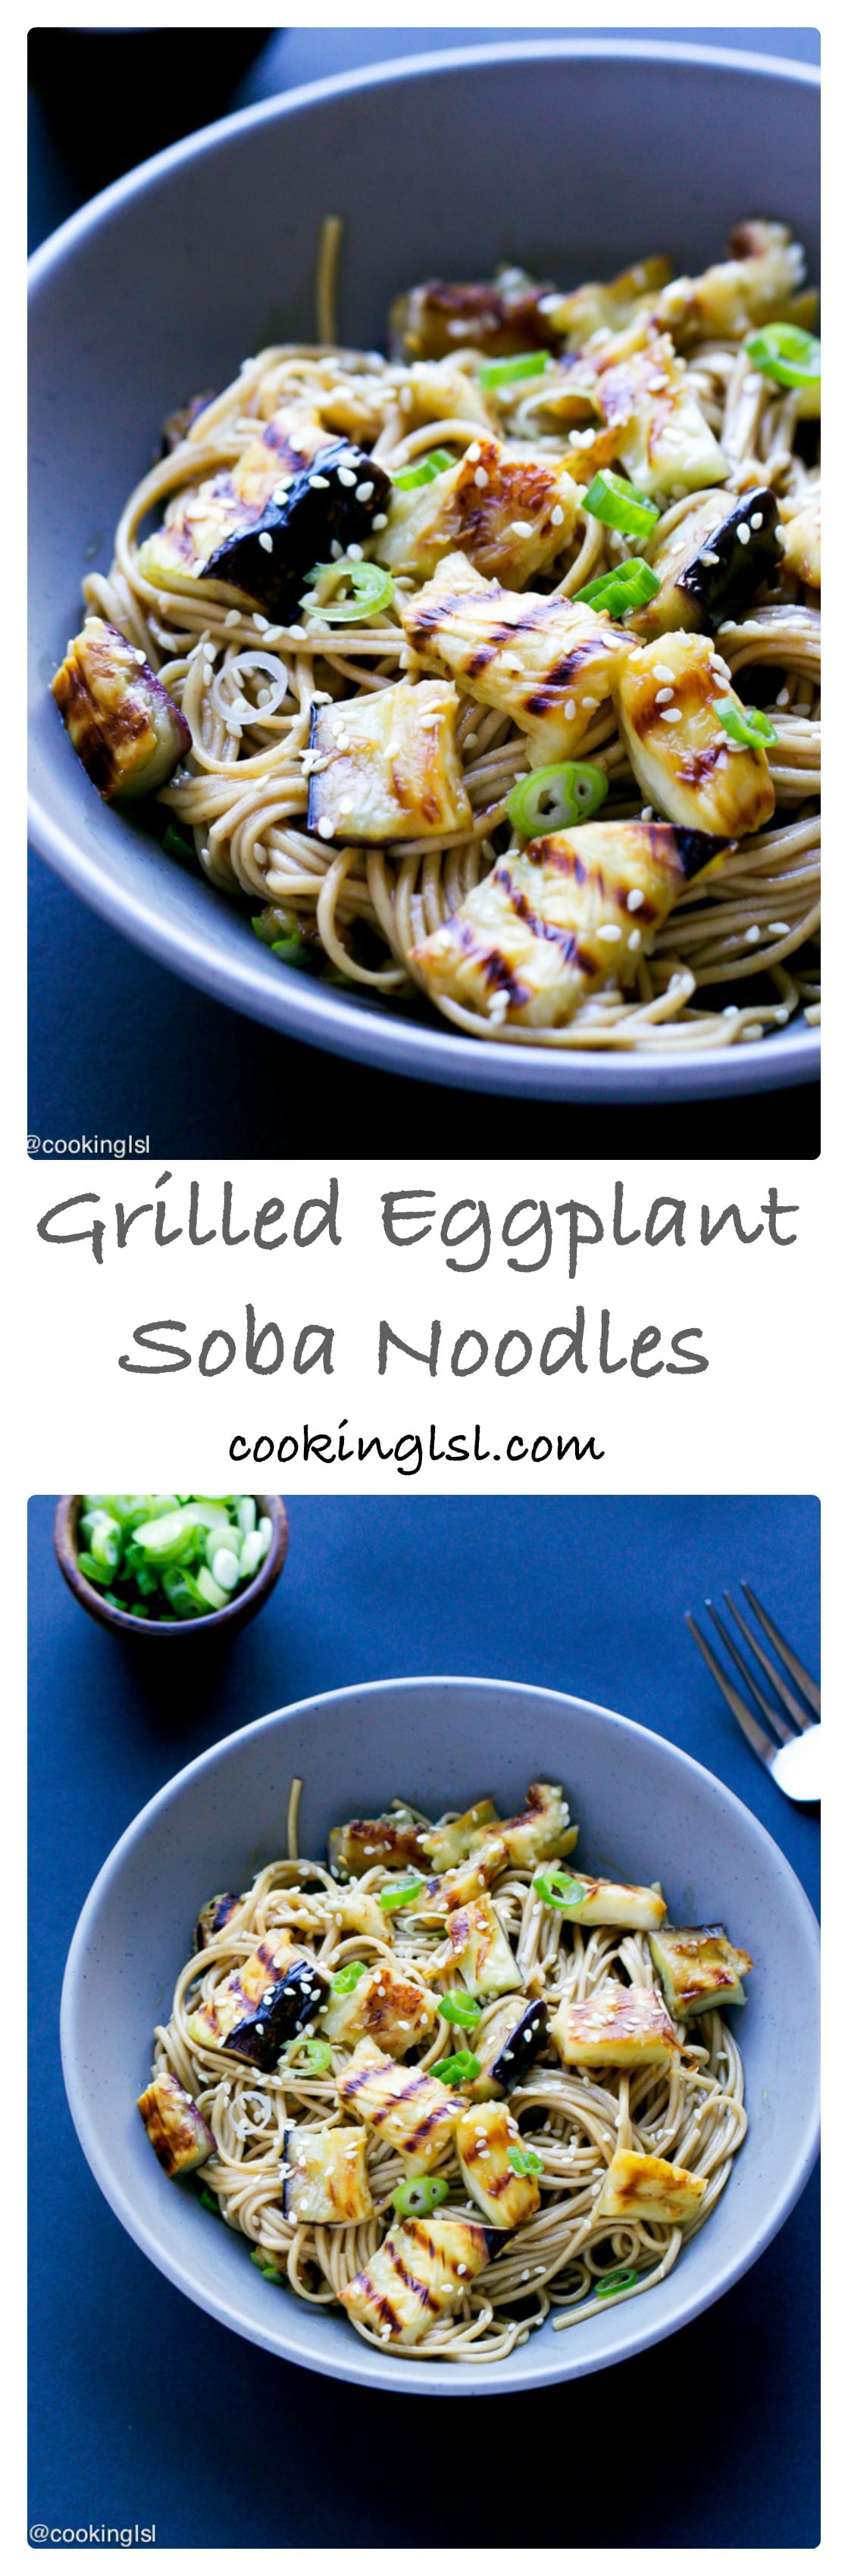 grilled-eggplant-soba-noodles-recipe